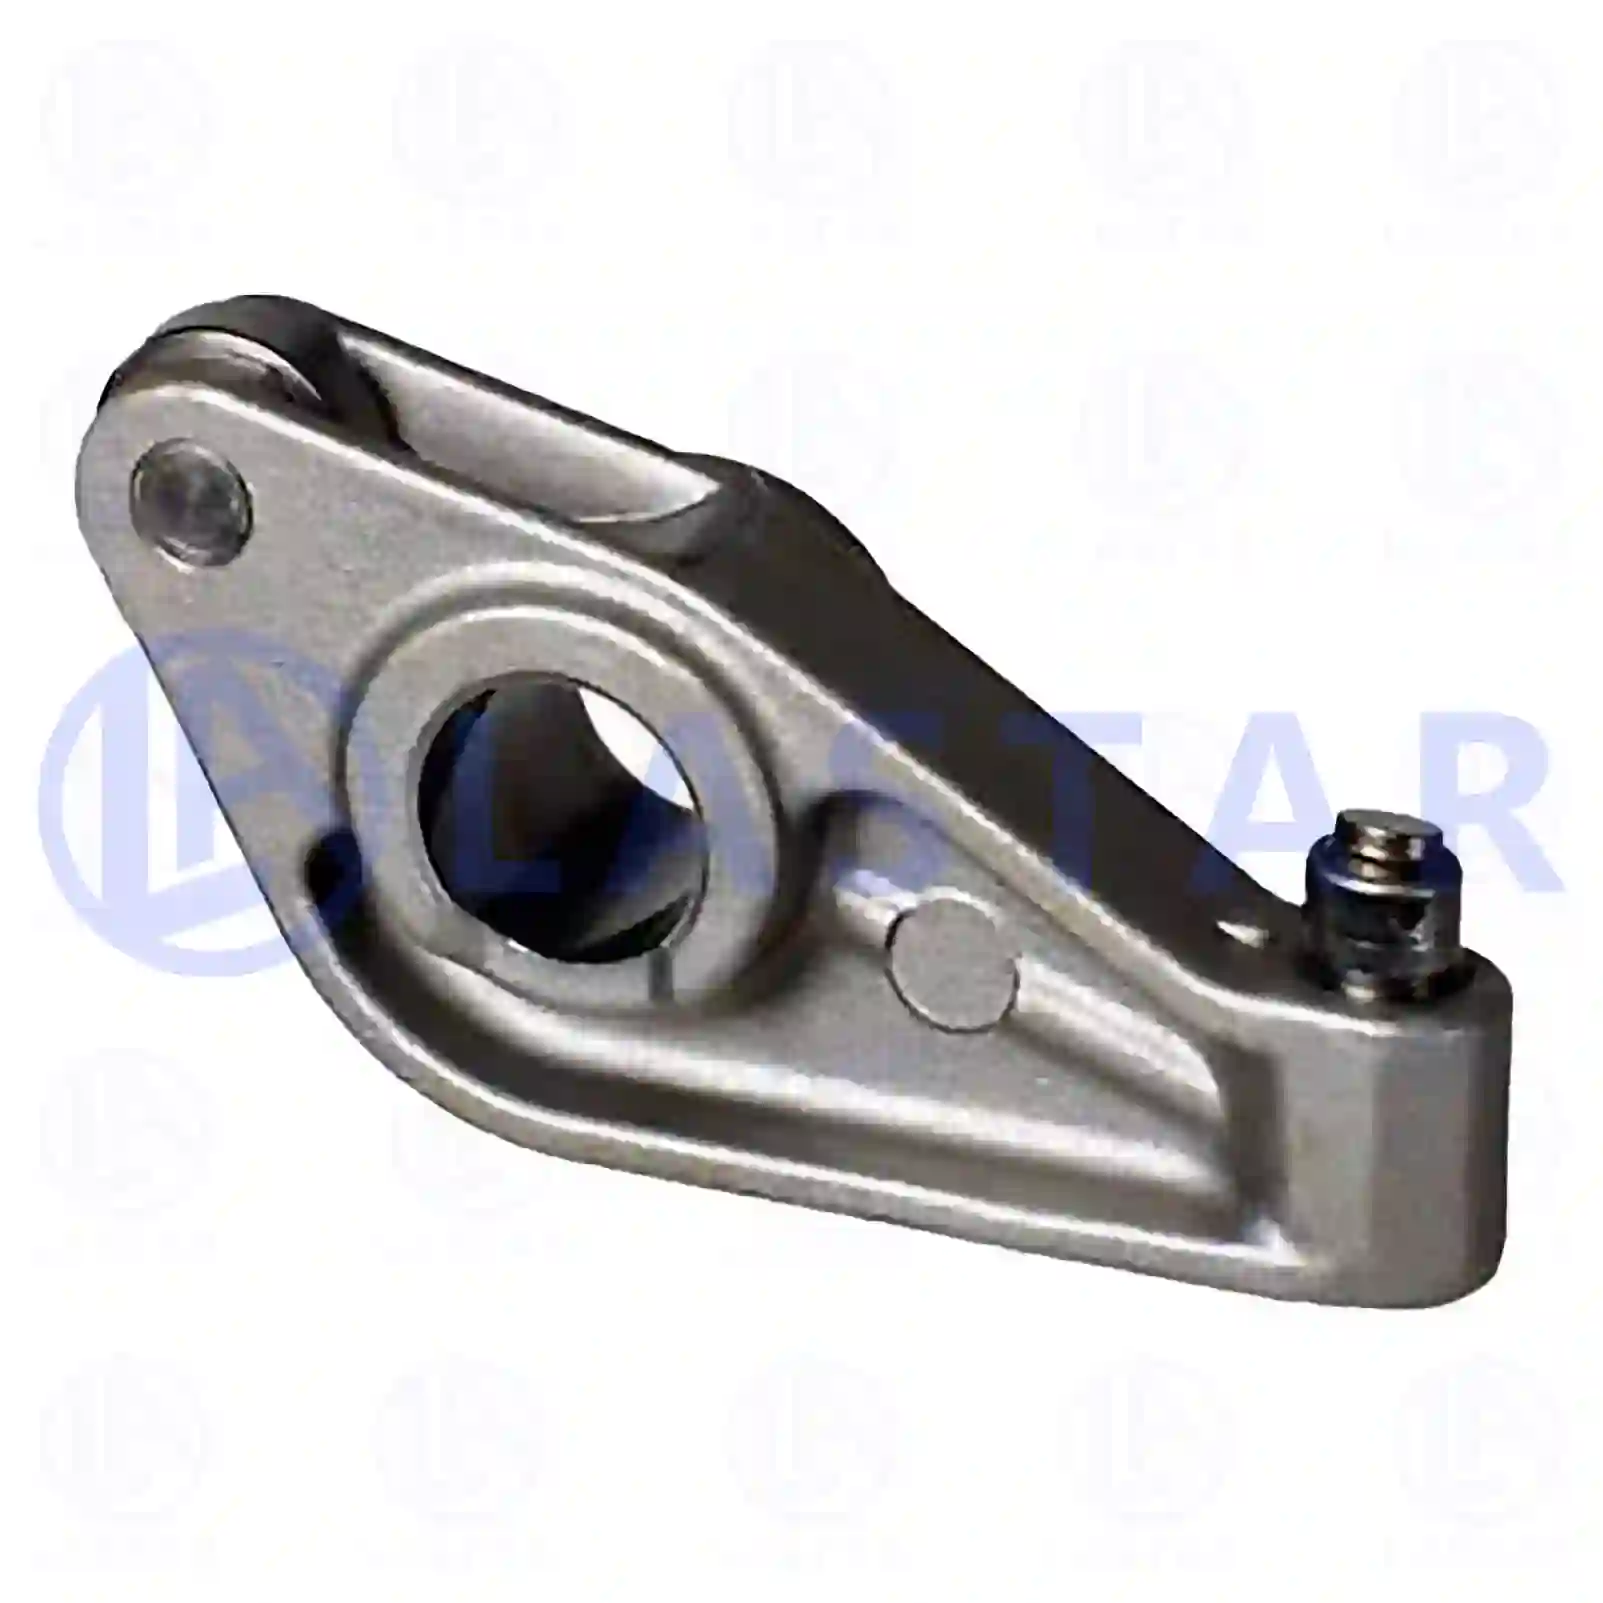  Cylinder Head Rocker arm, la no: 77700646 ,  oem no:1120750, XS7Q-6529-A1C Lastar Spare Part | Truck Spare Parts, Auotomotive Spare Parts